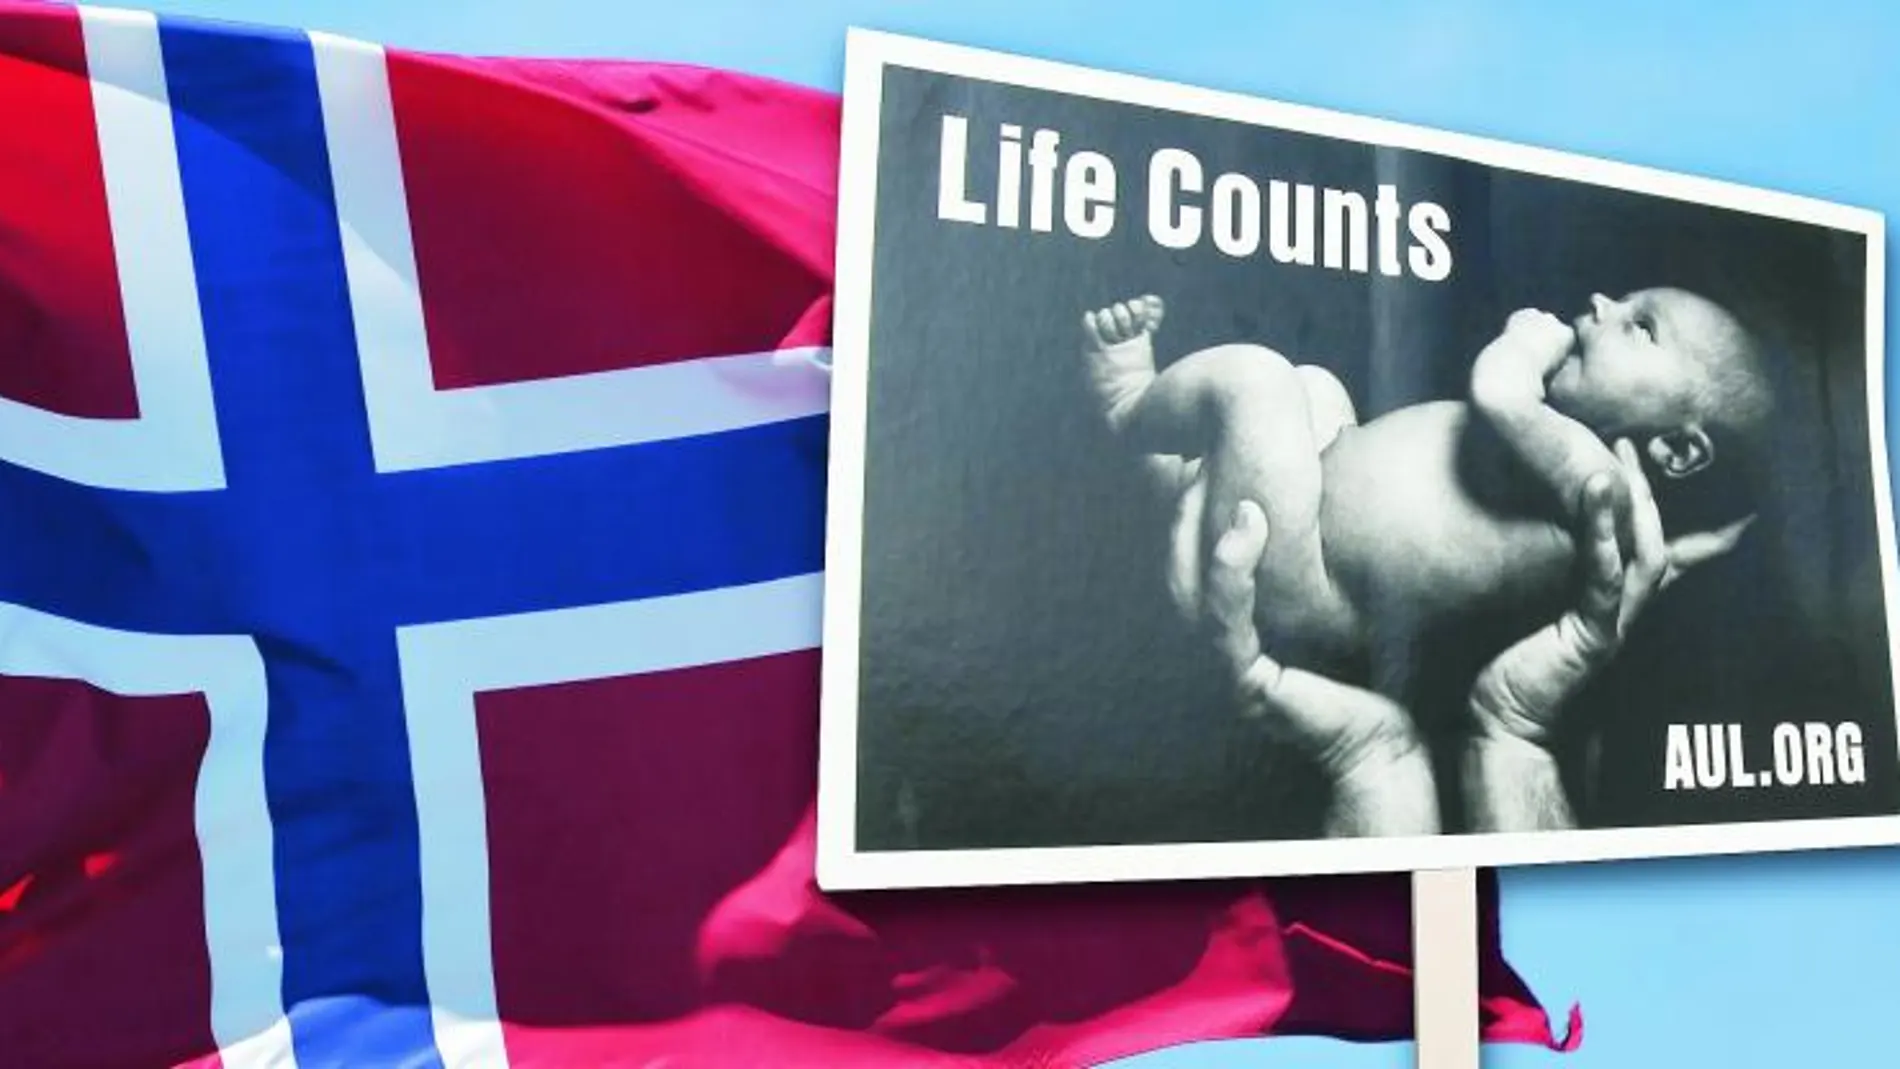 Como el anteproyecto español, Noruega prohíbe abortar pasada la semana 22 y reconoce los derechos del feto